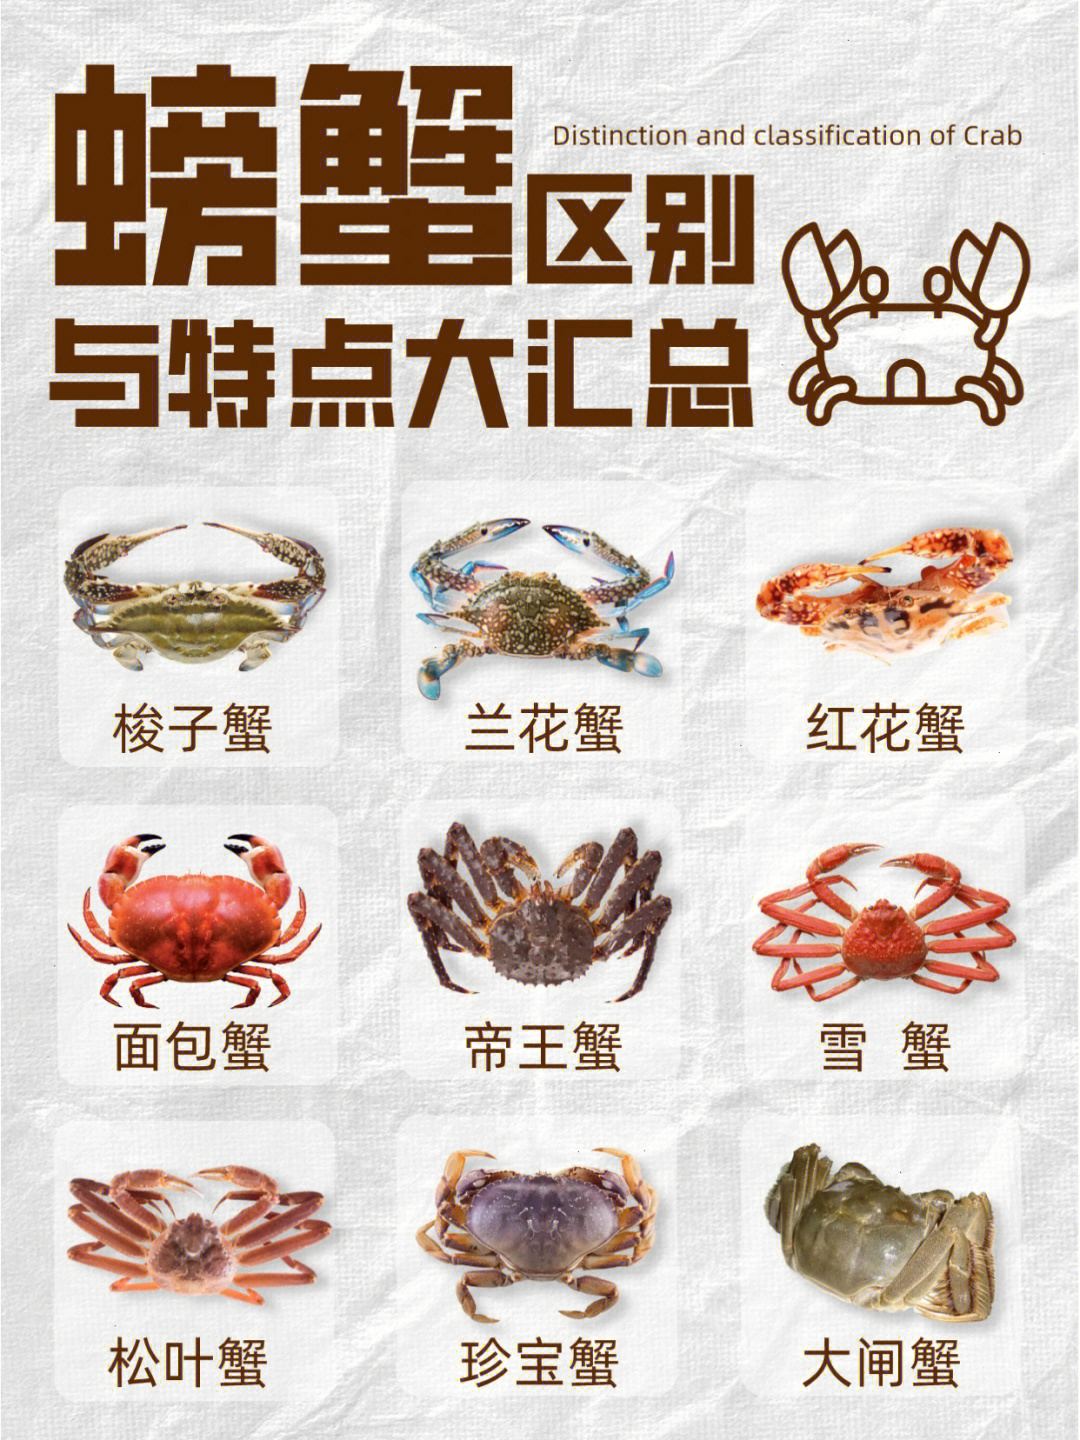 各种蟹的图片和名称图片